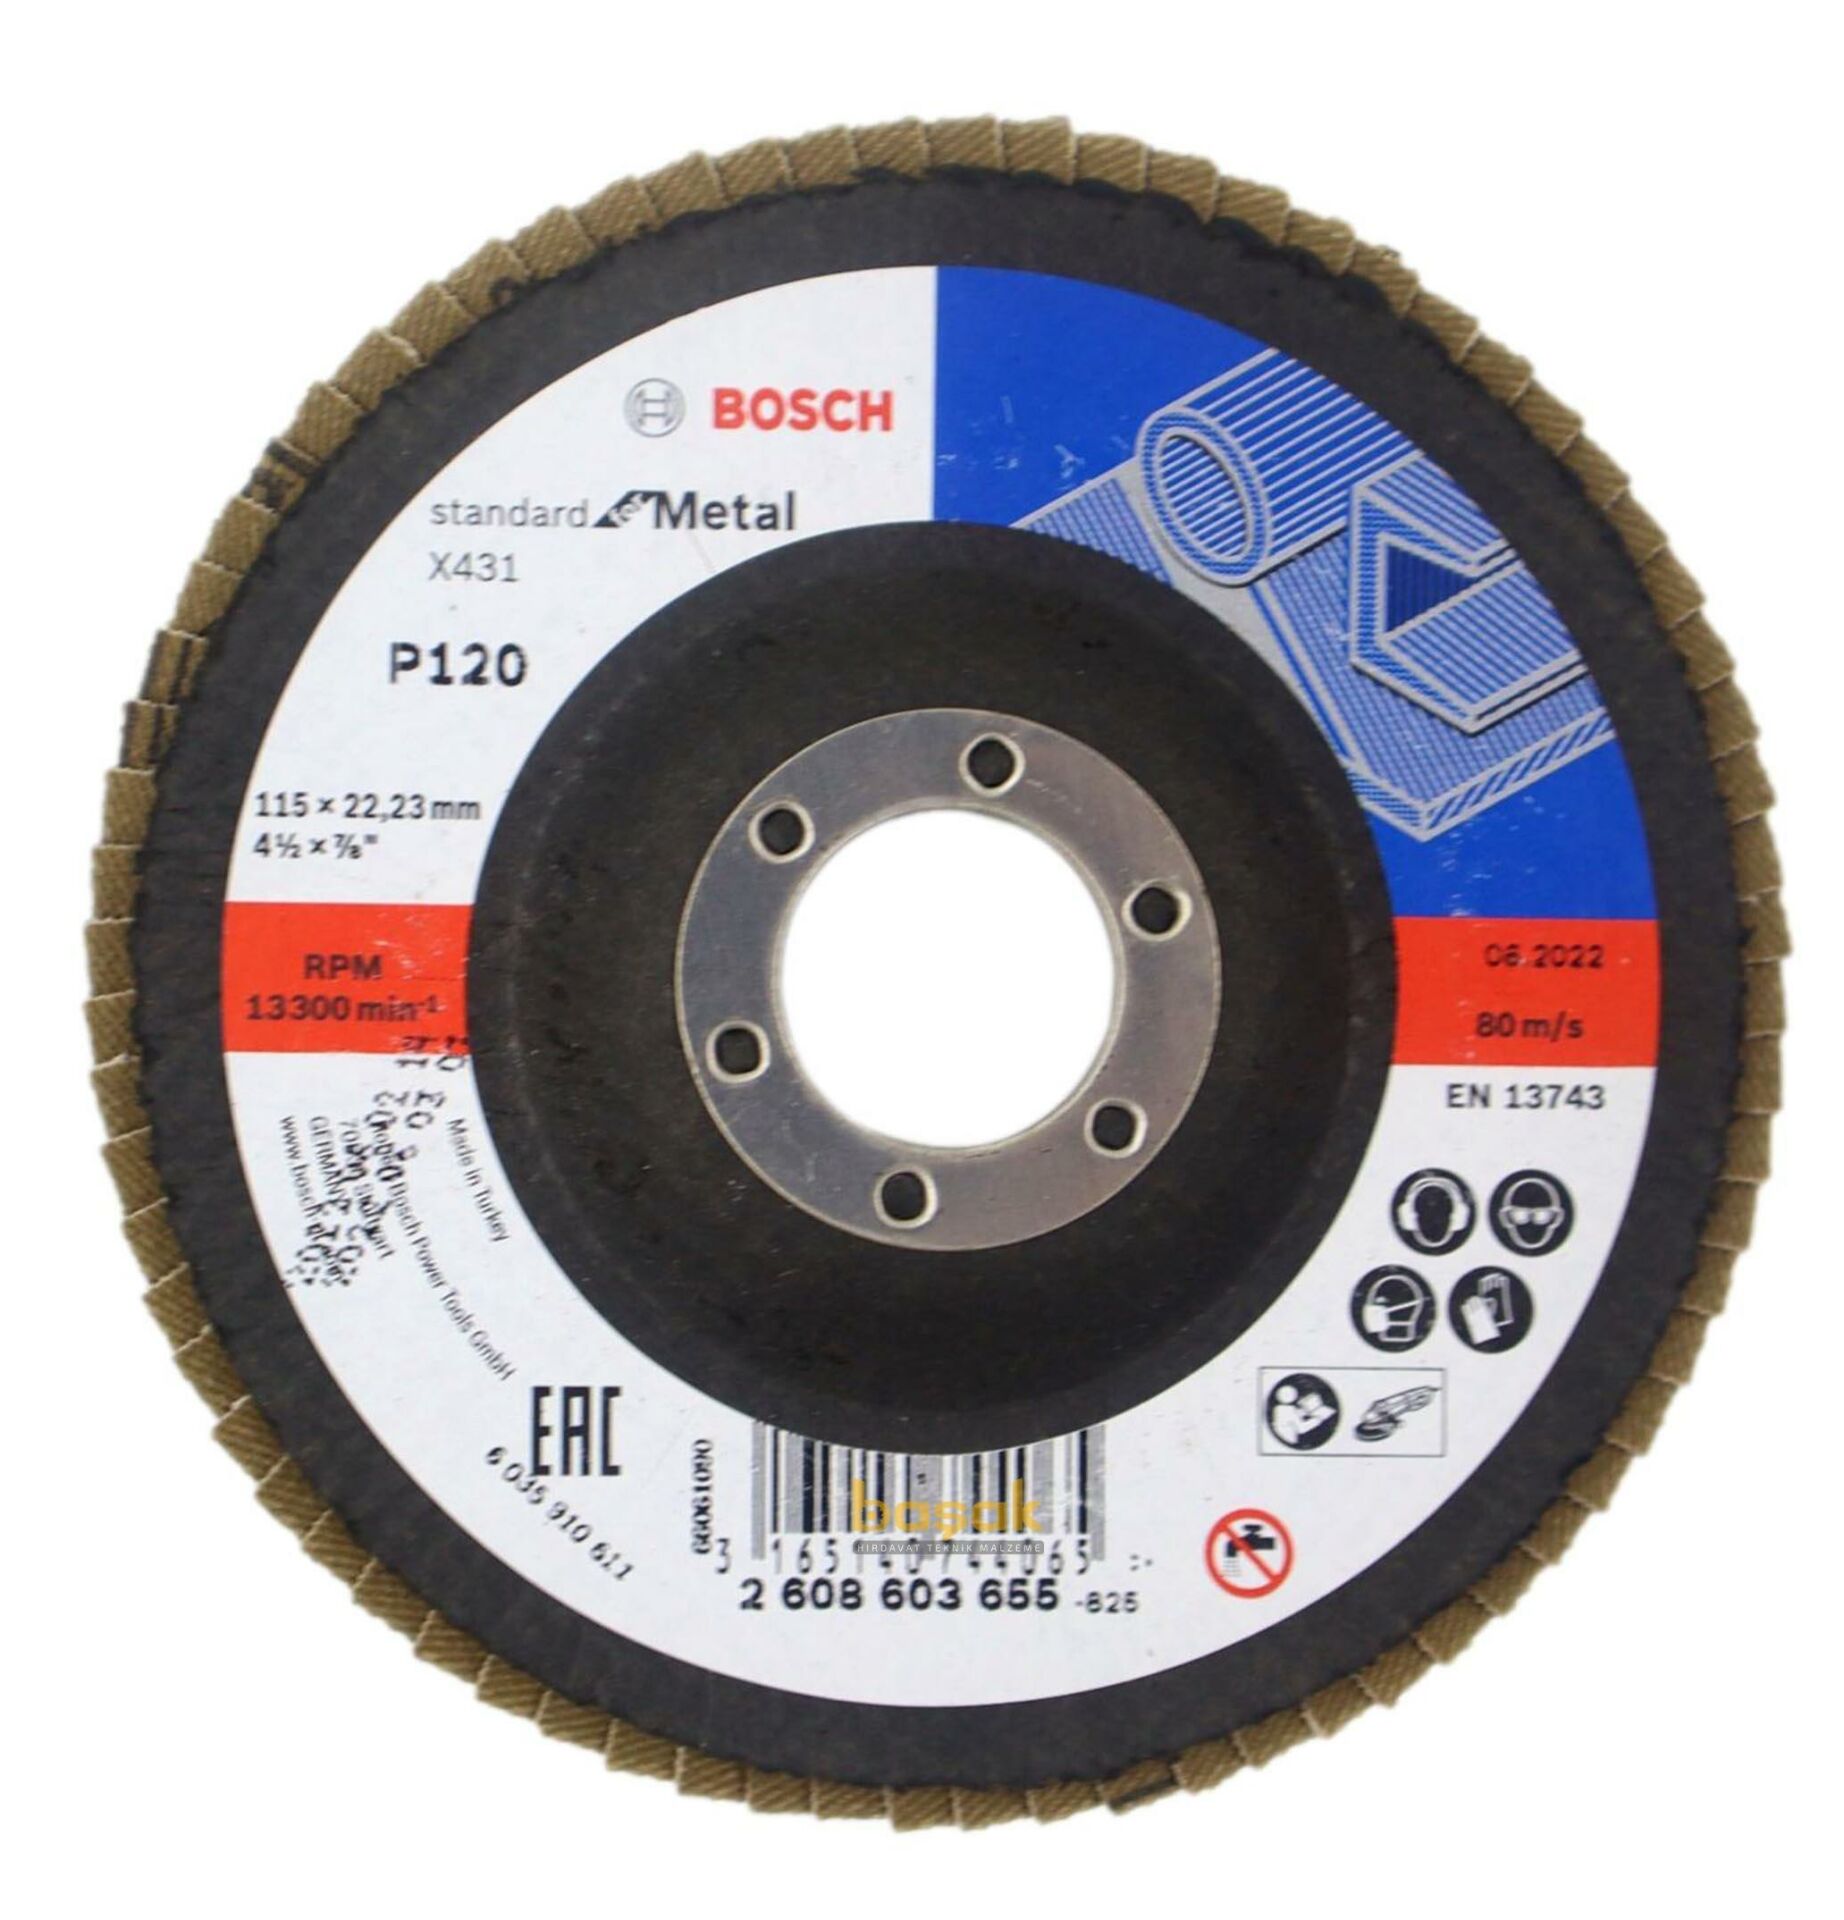 Bosch 115 mm 120 Kum X431 Standart Metal Flap Disk 2608603655